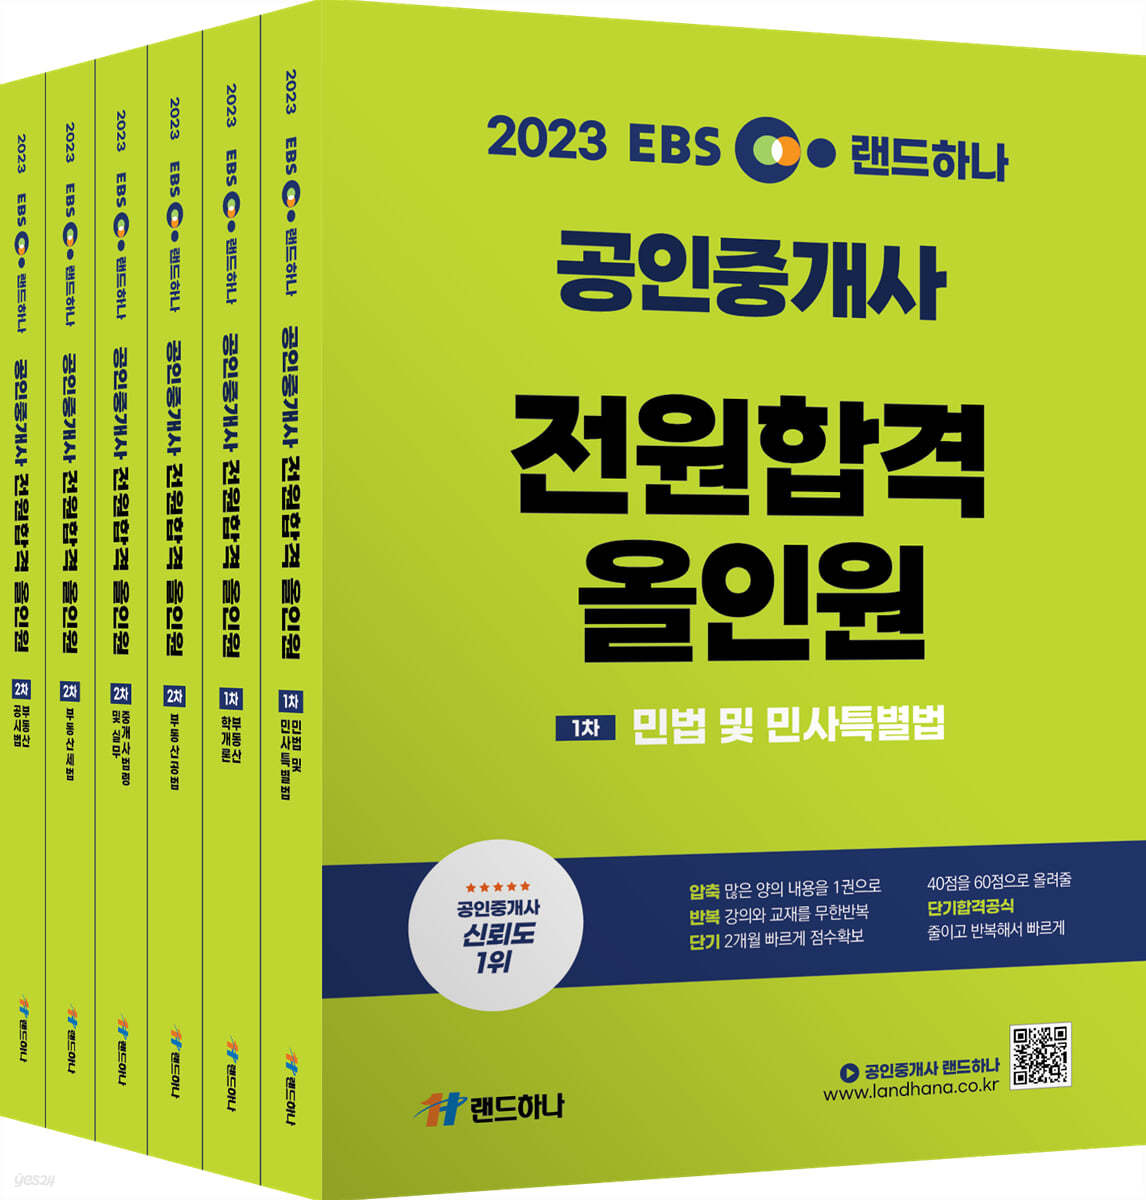 2023 EBS 랜드하나 공인중개사 전원합격 올인원 1차. 2차세트